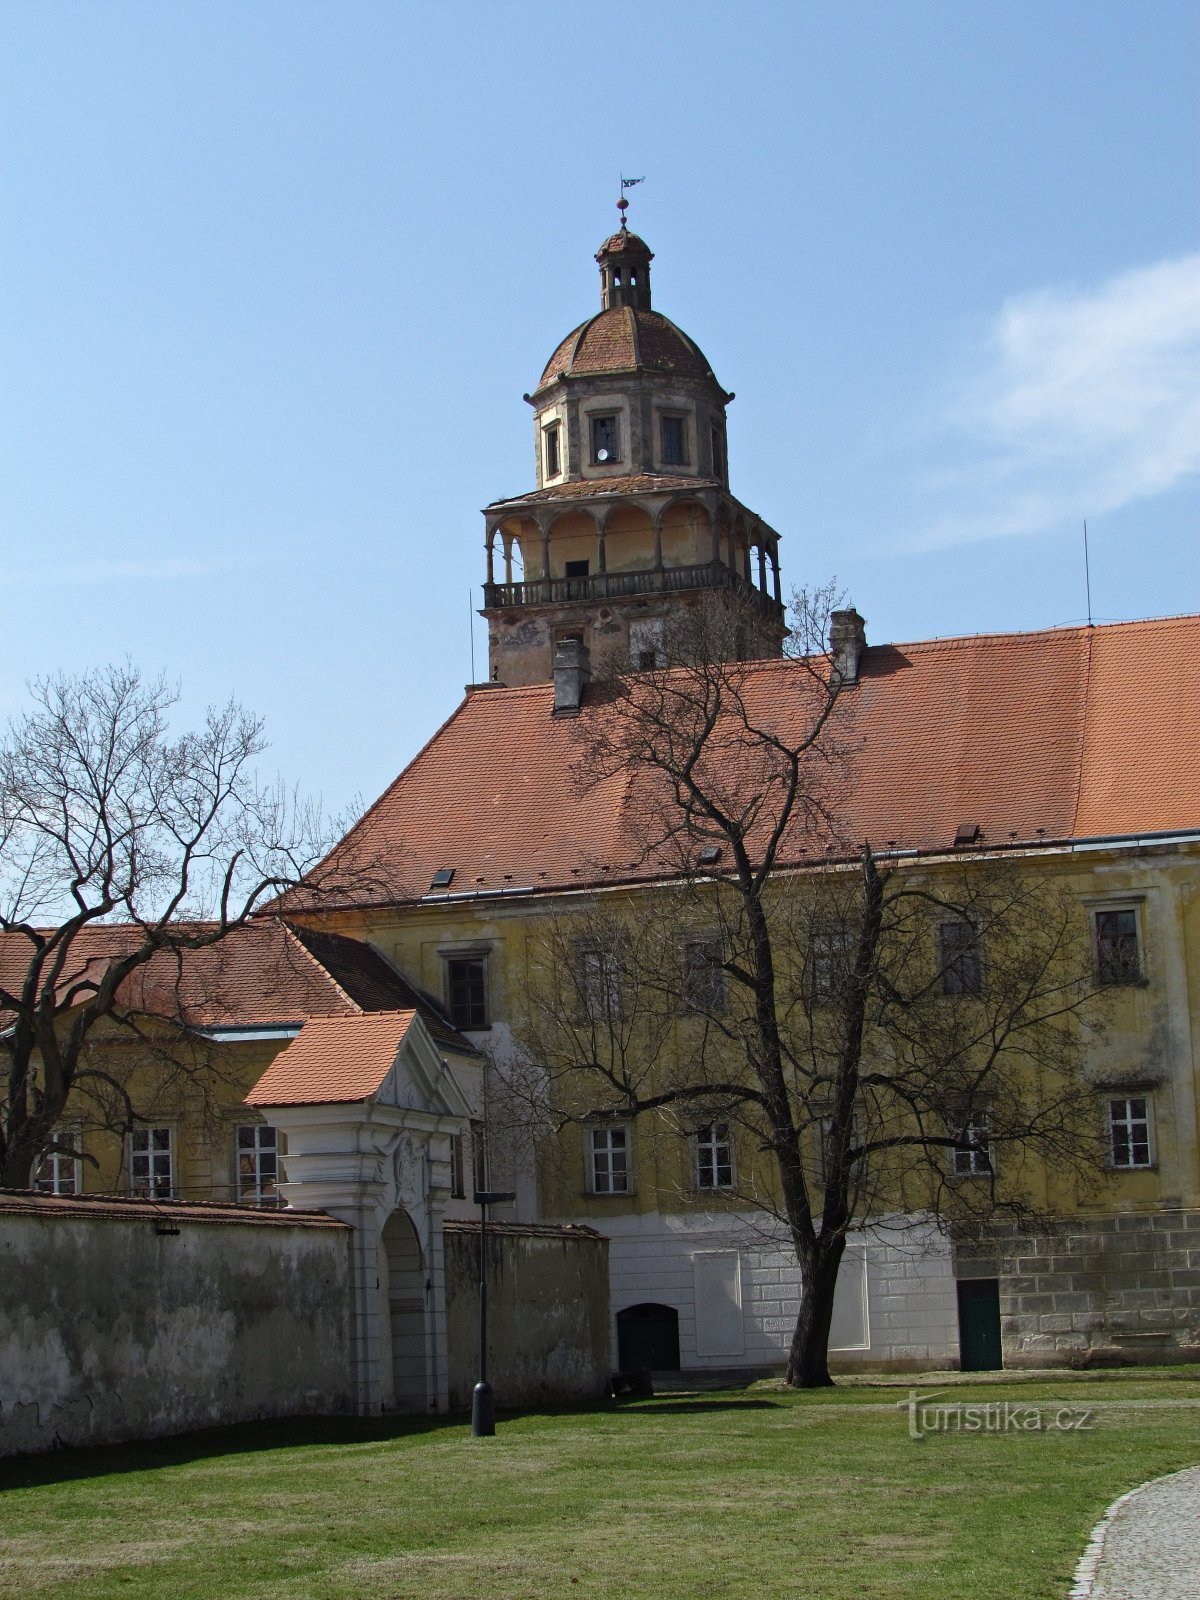 Burganlage Moravskokrumlov